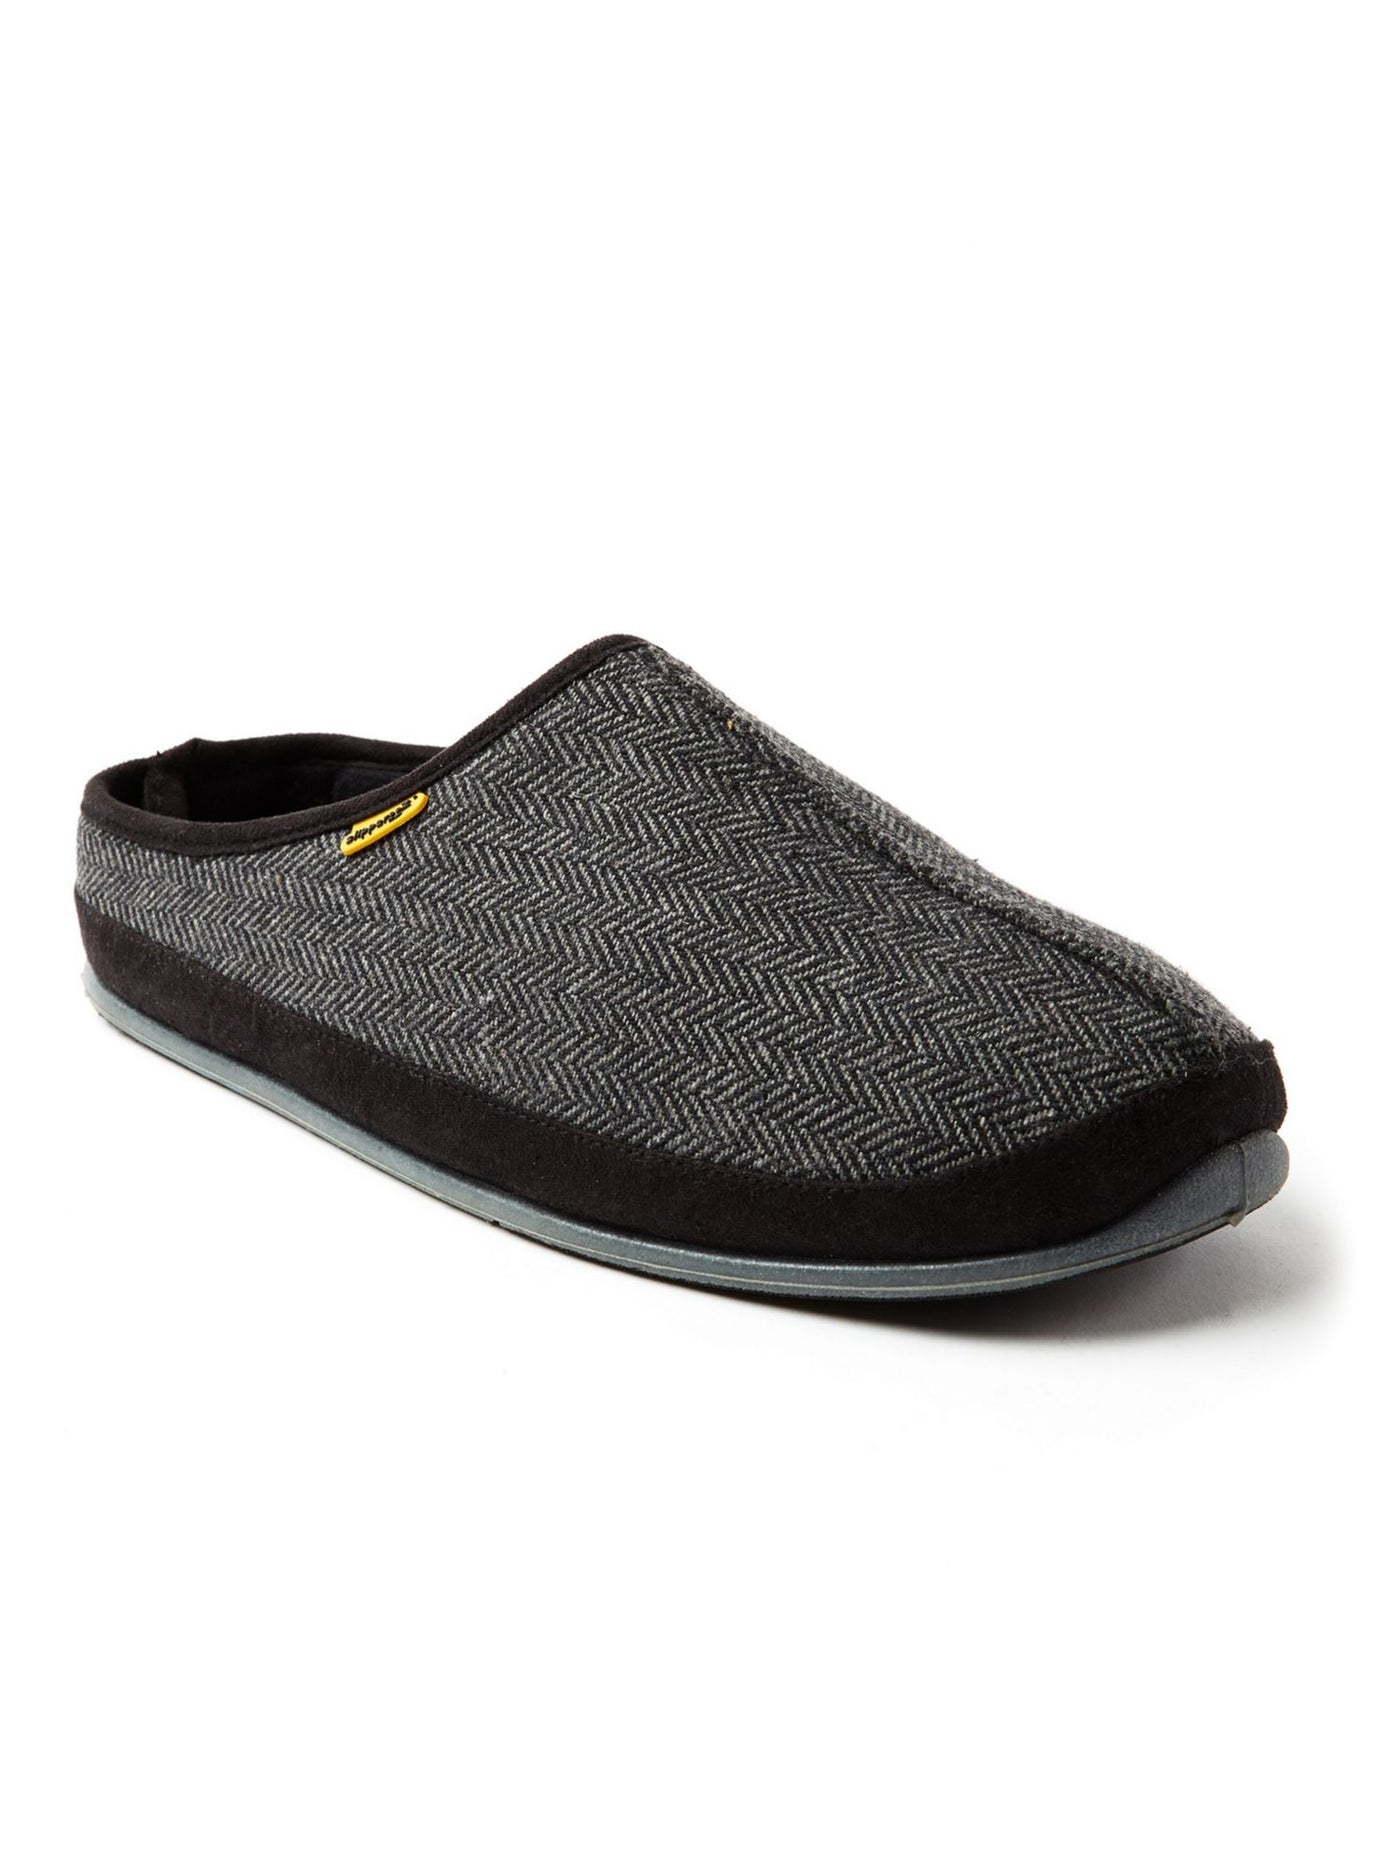 DEER STAGS SLIPPEROOZ Mens Gray Herringbone Padded Comfort Wherever Round Toe Platform Slip On Slippers Shoes 14 M